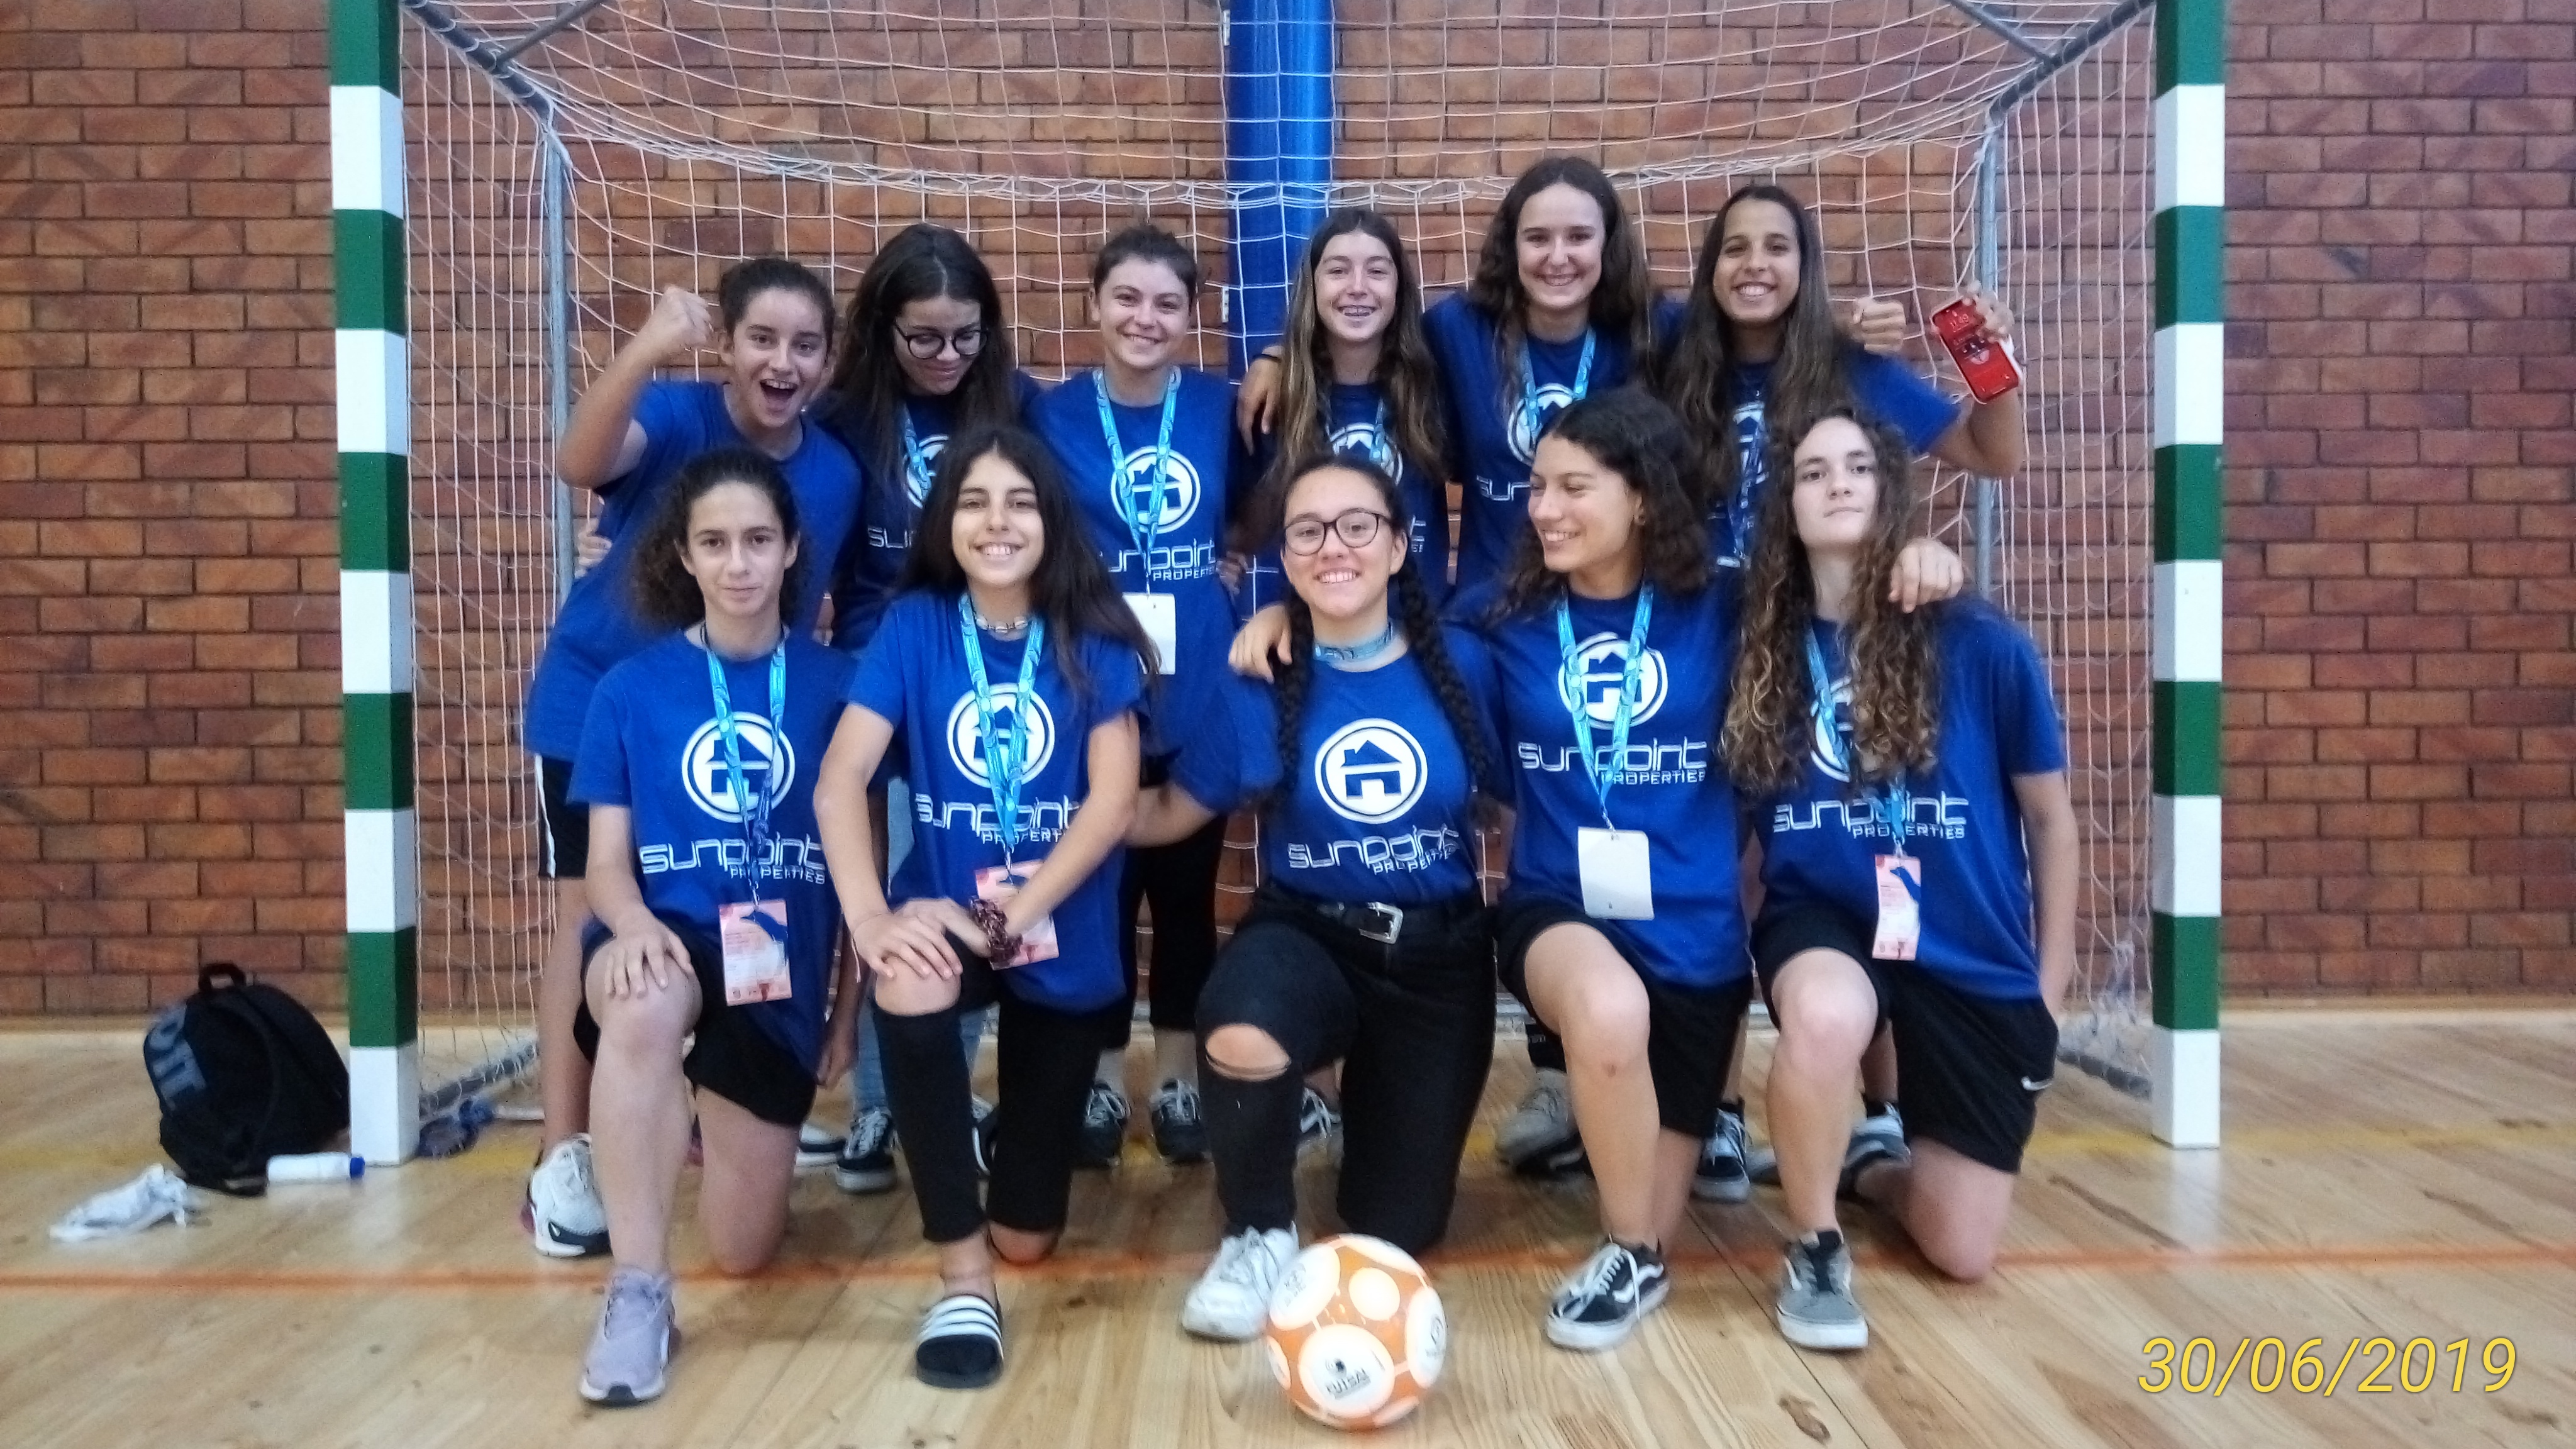 A equipa de Futsal Feminino do Agrupamento de Escolas Gil Eanes representou o Algarve na Fase Nacional dos Campeonatos de Iniciados